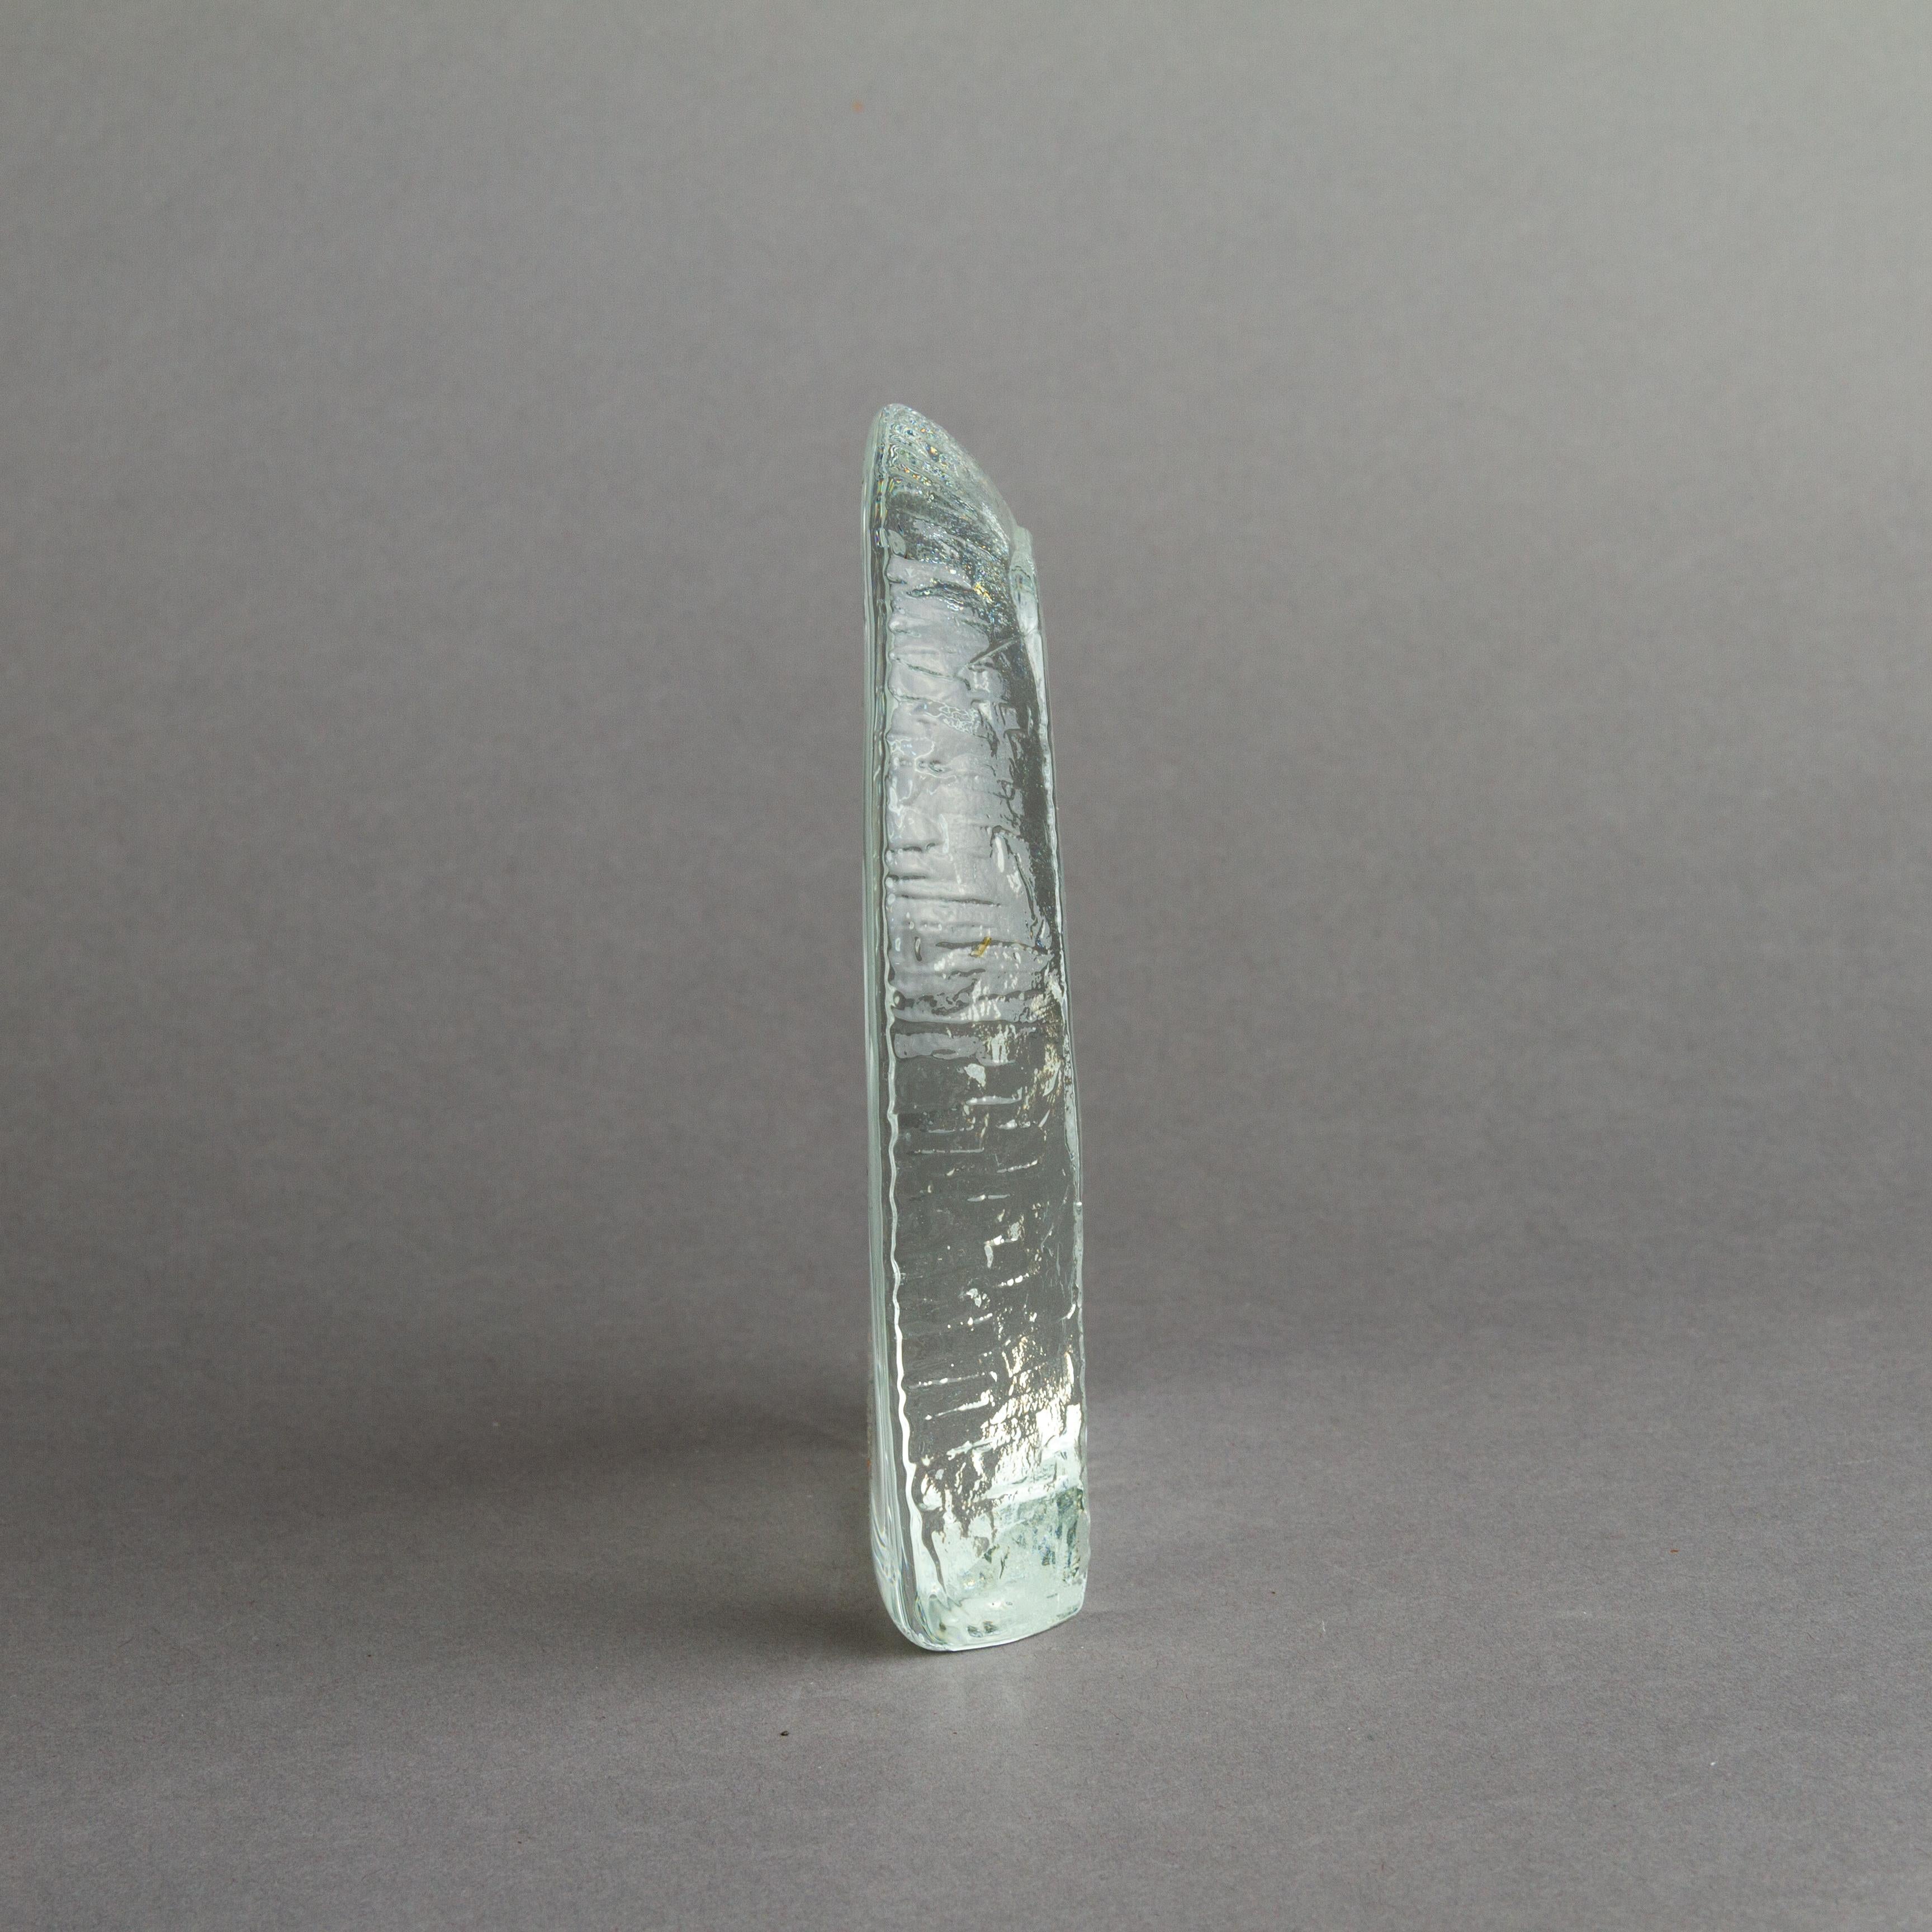 20th Century Crystal Glass Intaglio Paperweight Sculpture of a Herron Bird